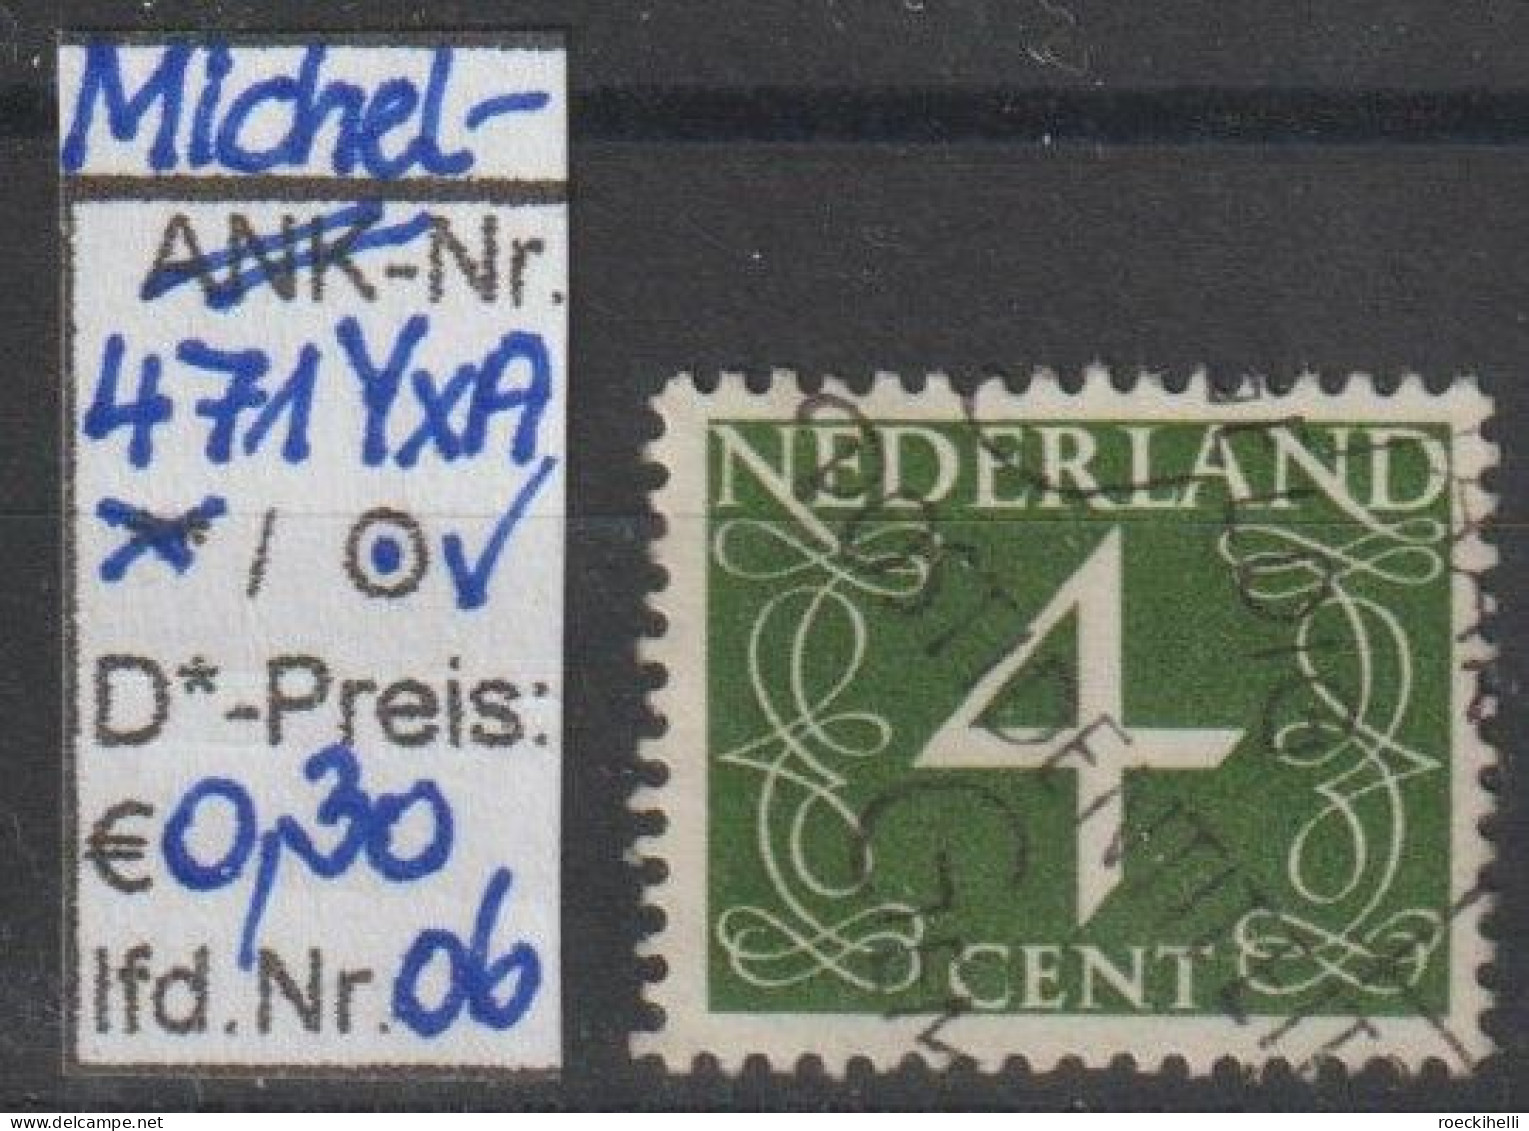 1946 - NIEDERLANDE - FM/DM "Ziffern-Zeichnung" 4 C olivgrün - o gestempelt - s. Scan (471YxAo 01-26 nl)